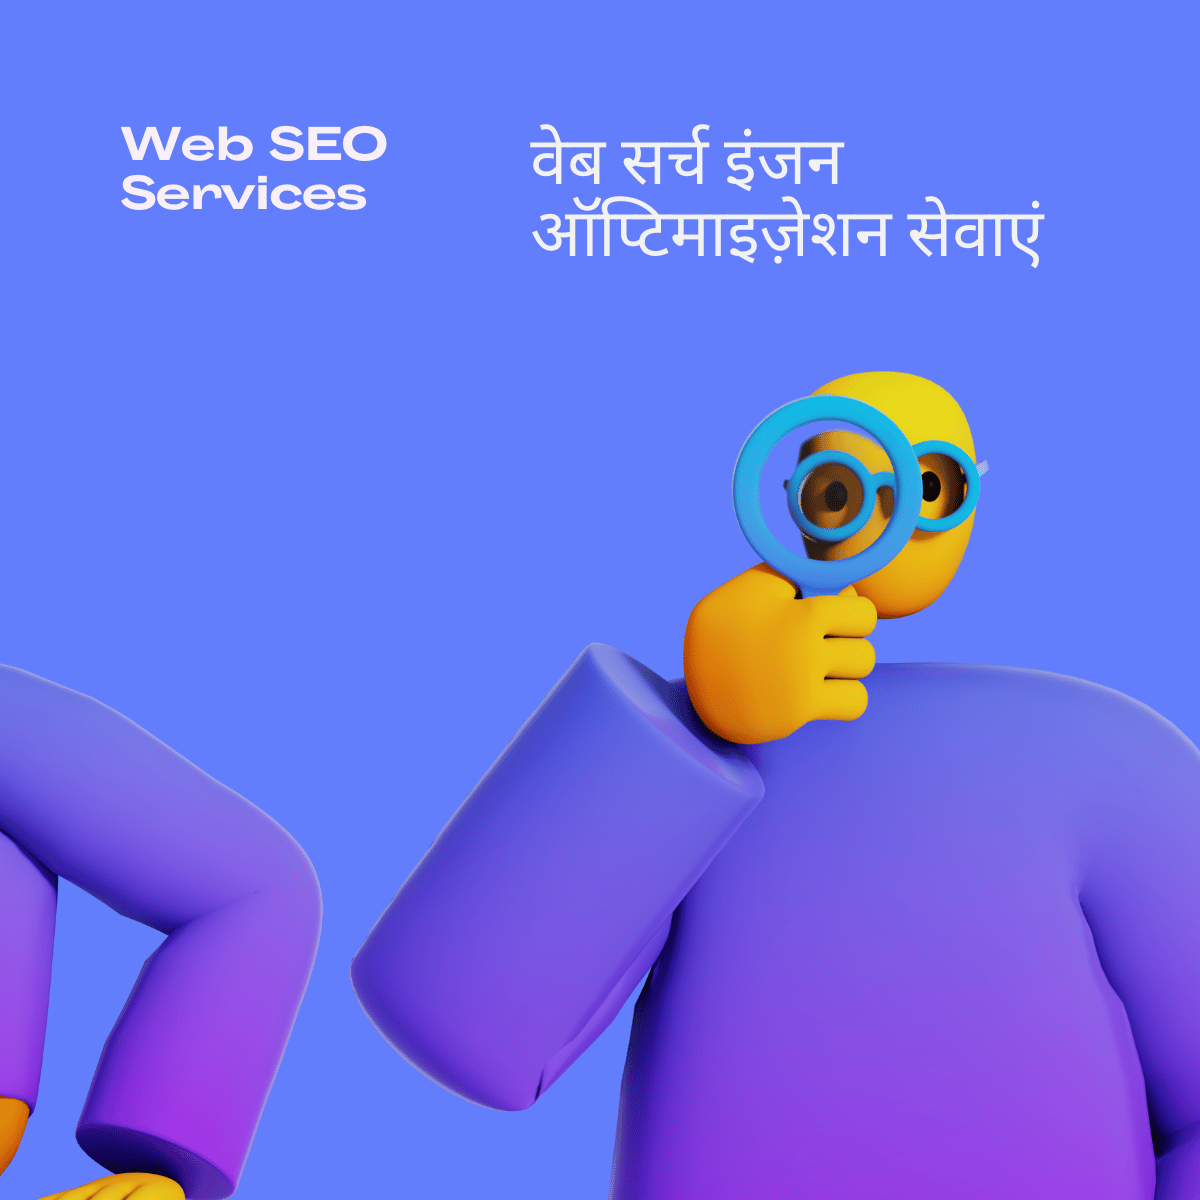 Web SEO Services वेब सर्च इंजन ऑप्टिमाइज़ेशन सेवाएं